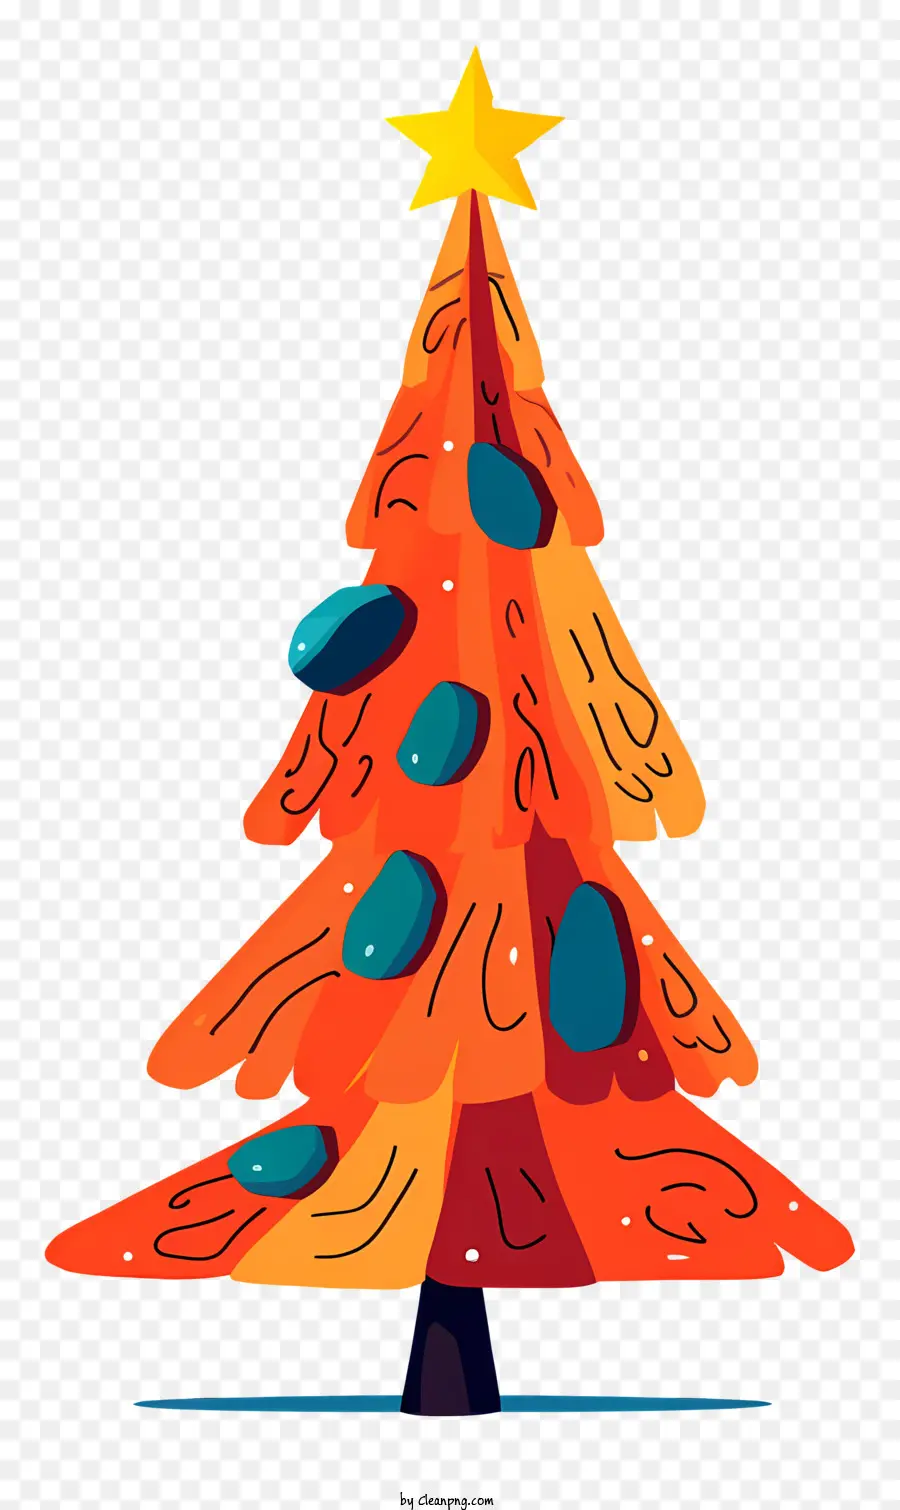 cây giáng sinh - Cây thông Noel đầy màu sắc, táo bạo với các vì sao, được xác định rõ ràng